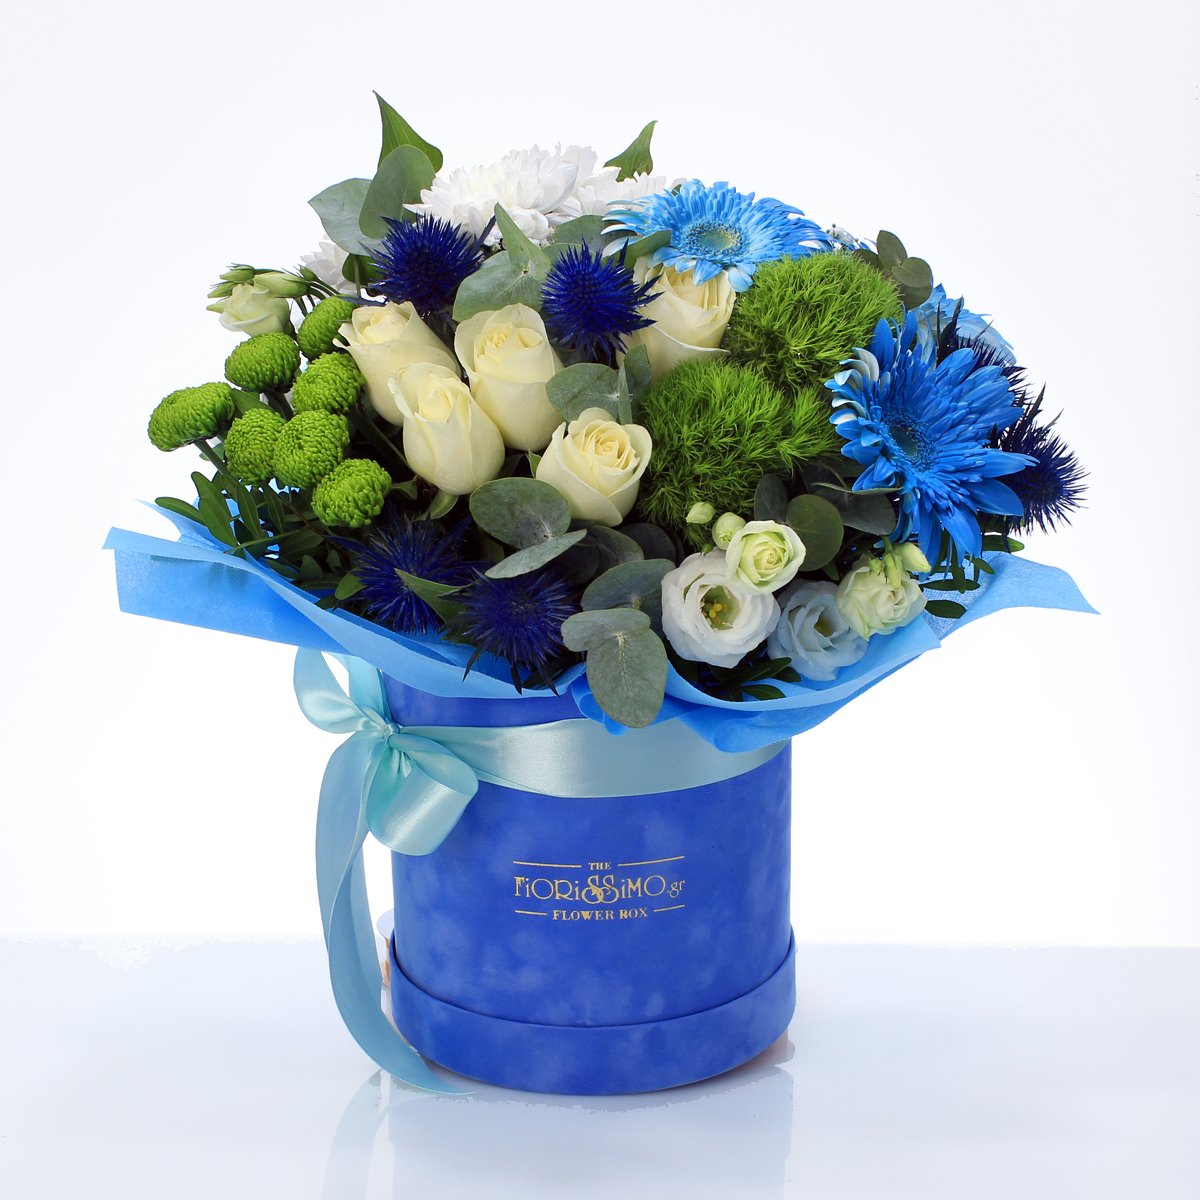 White and blue flowers in velvet box!